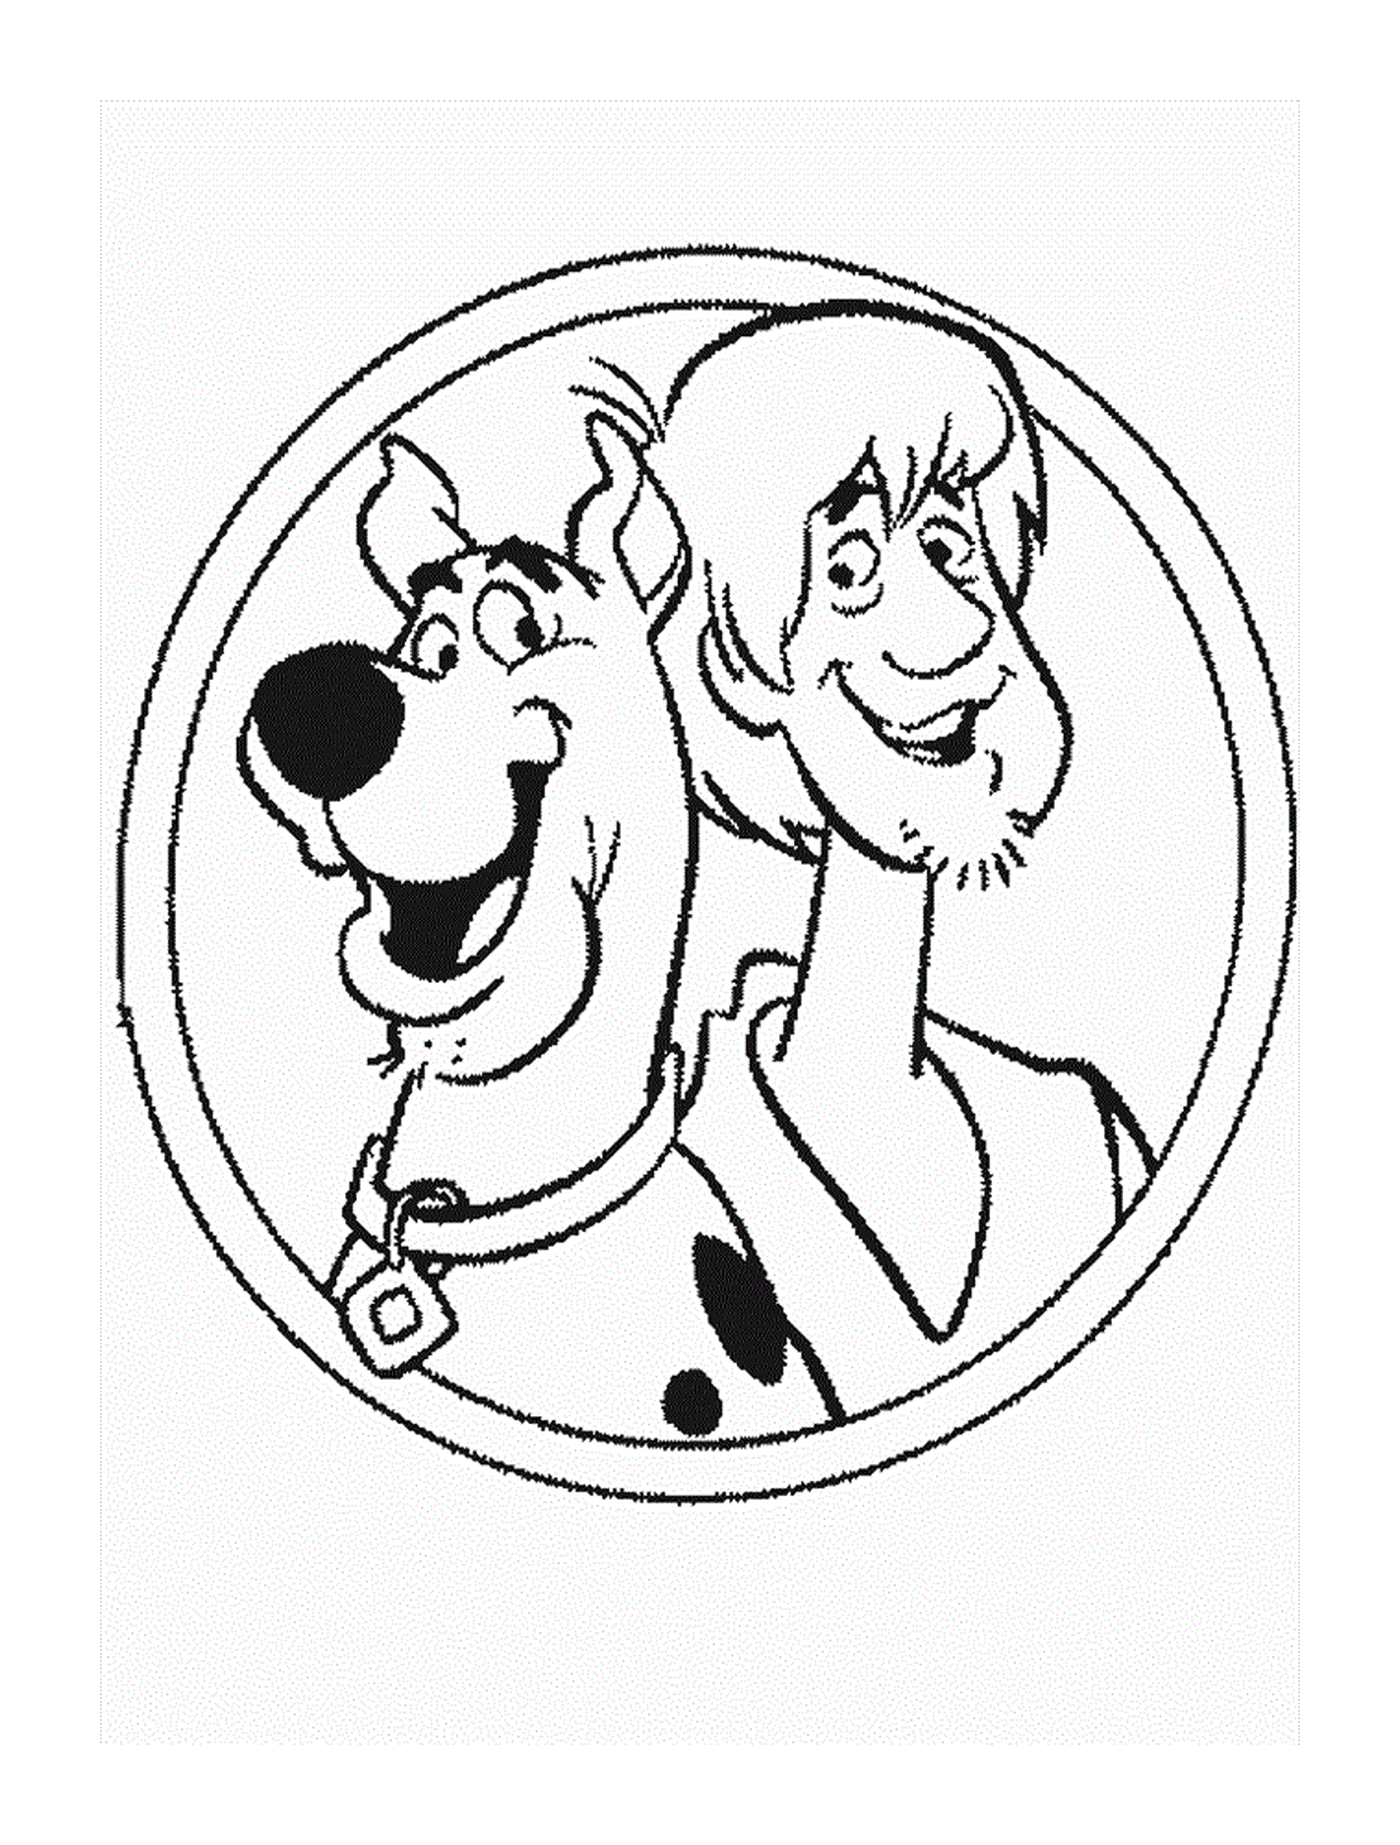  Shaggy y Scooby-Doo 